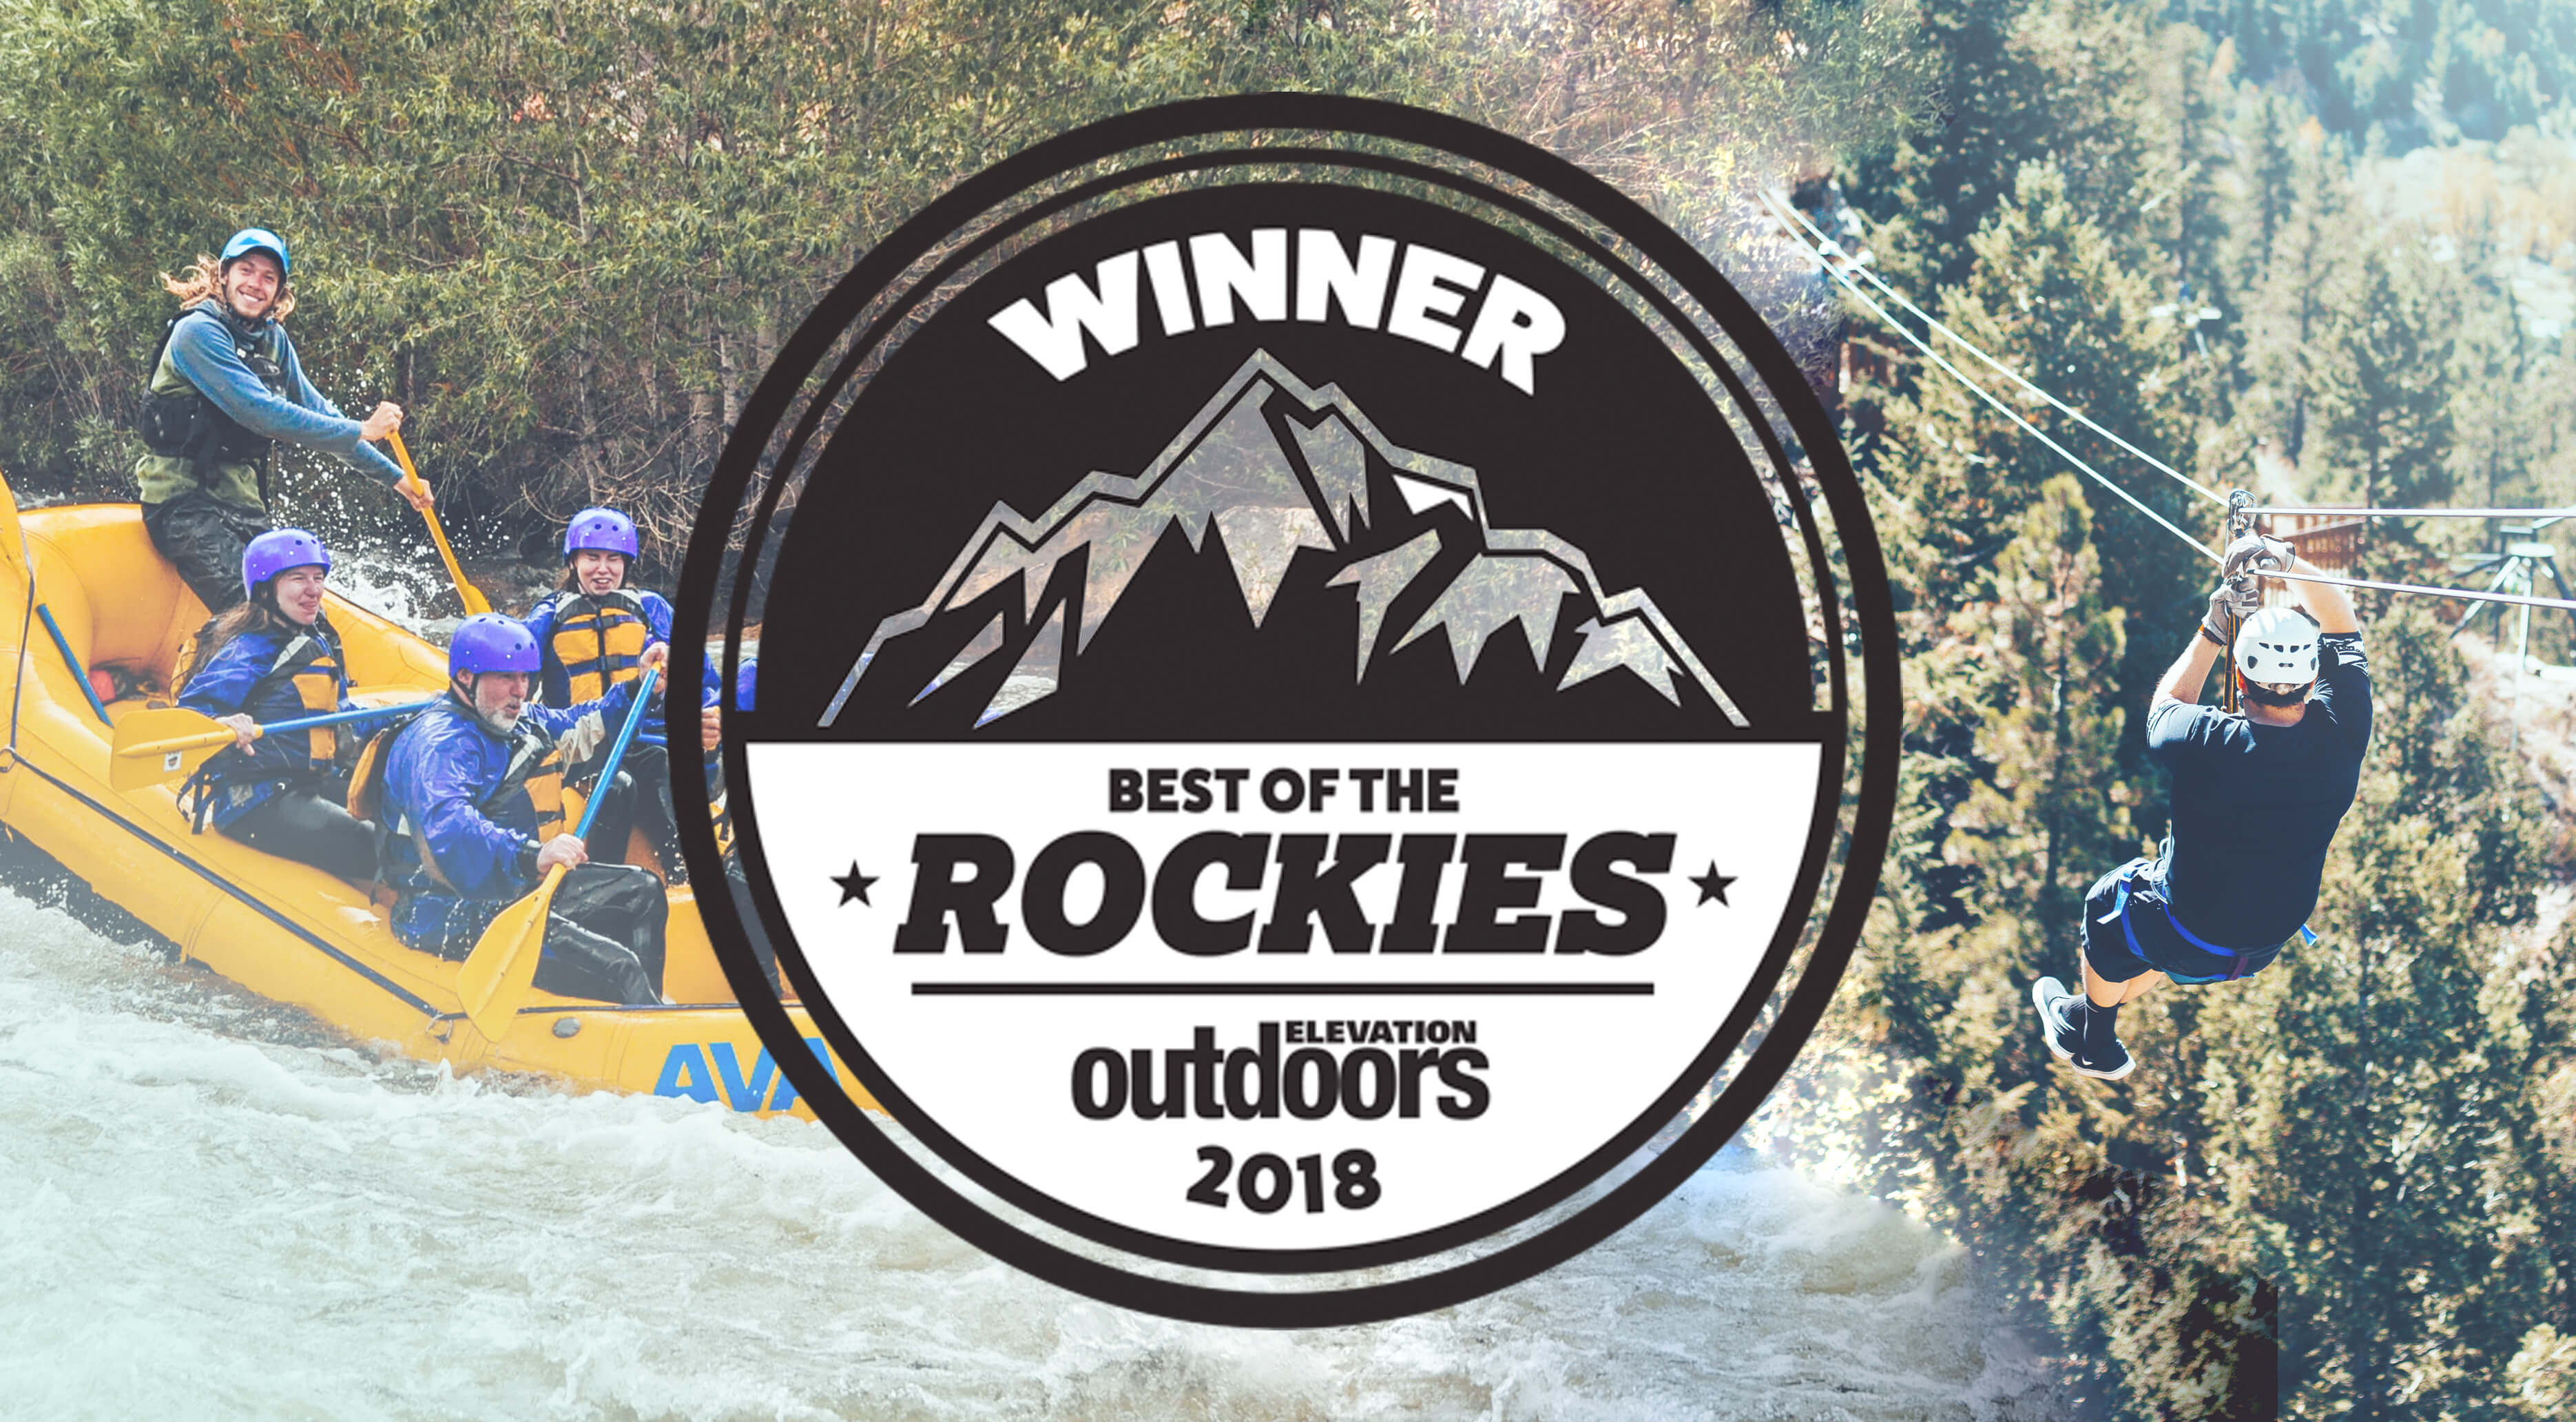 Best of the Rockies 2018 Winner